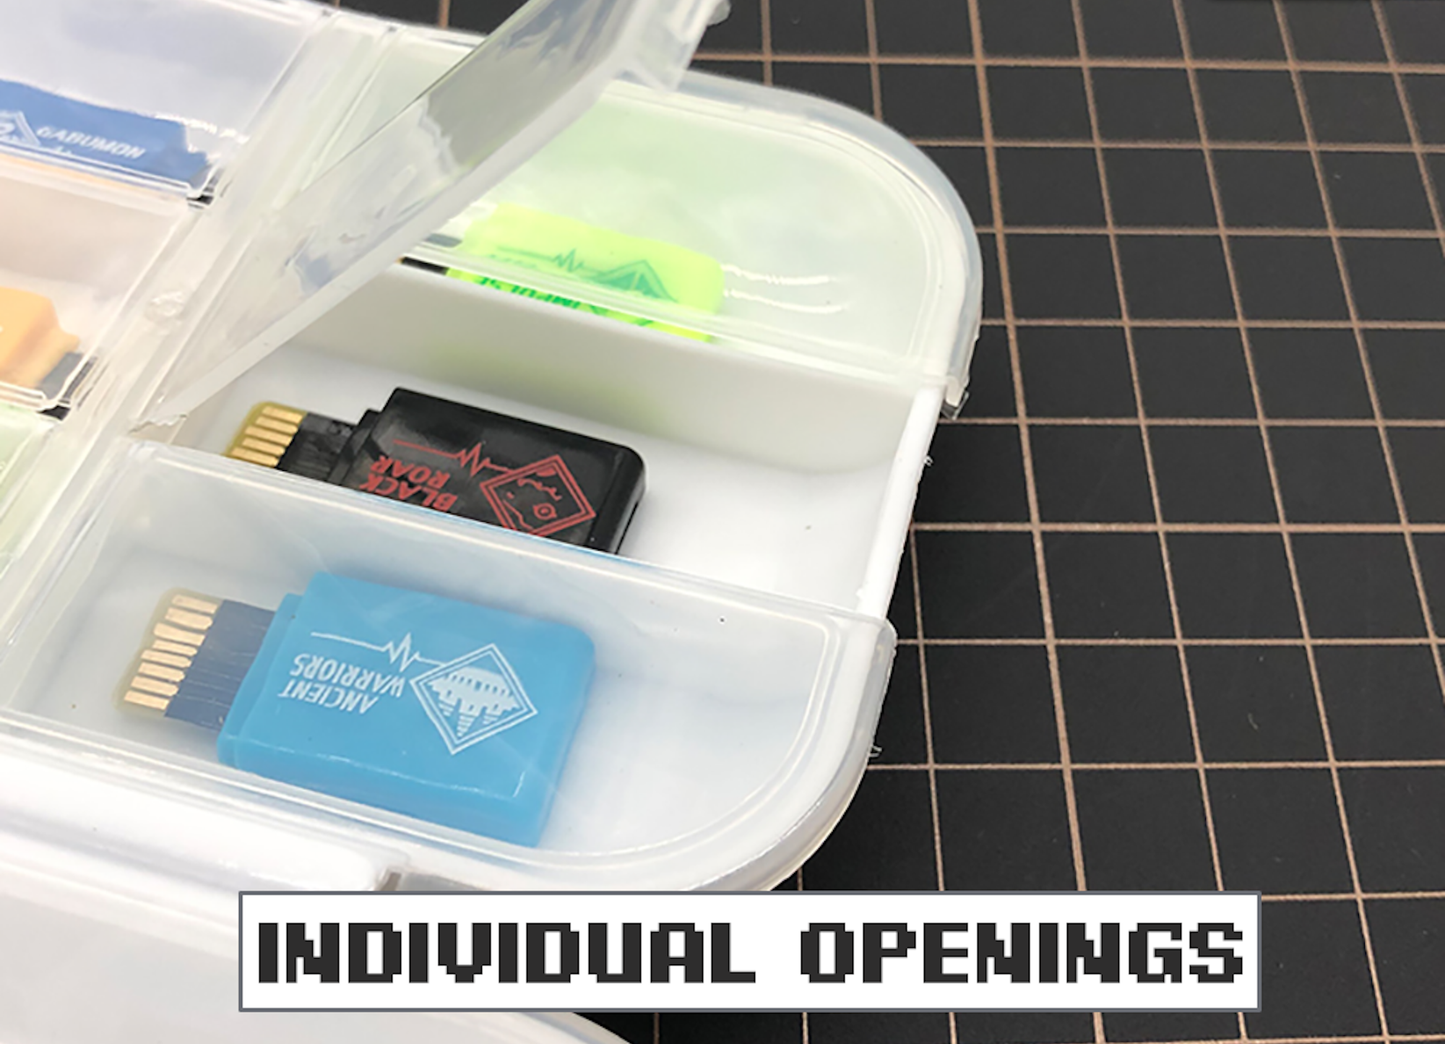 Vital ブレスレット Dim カード プラスチック製収納ケース